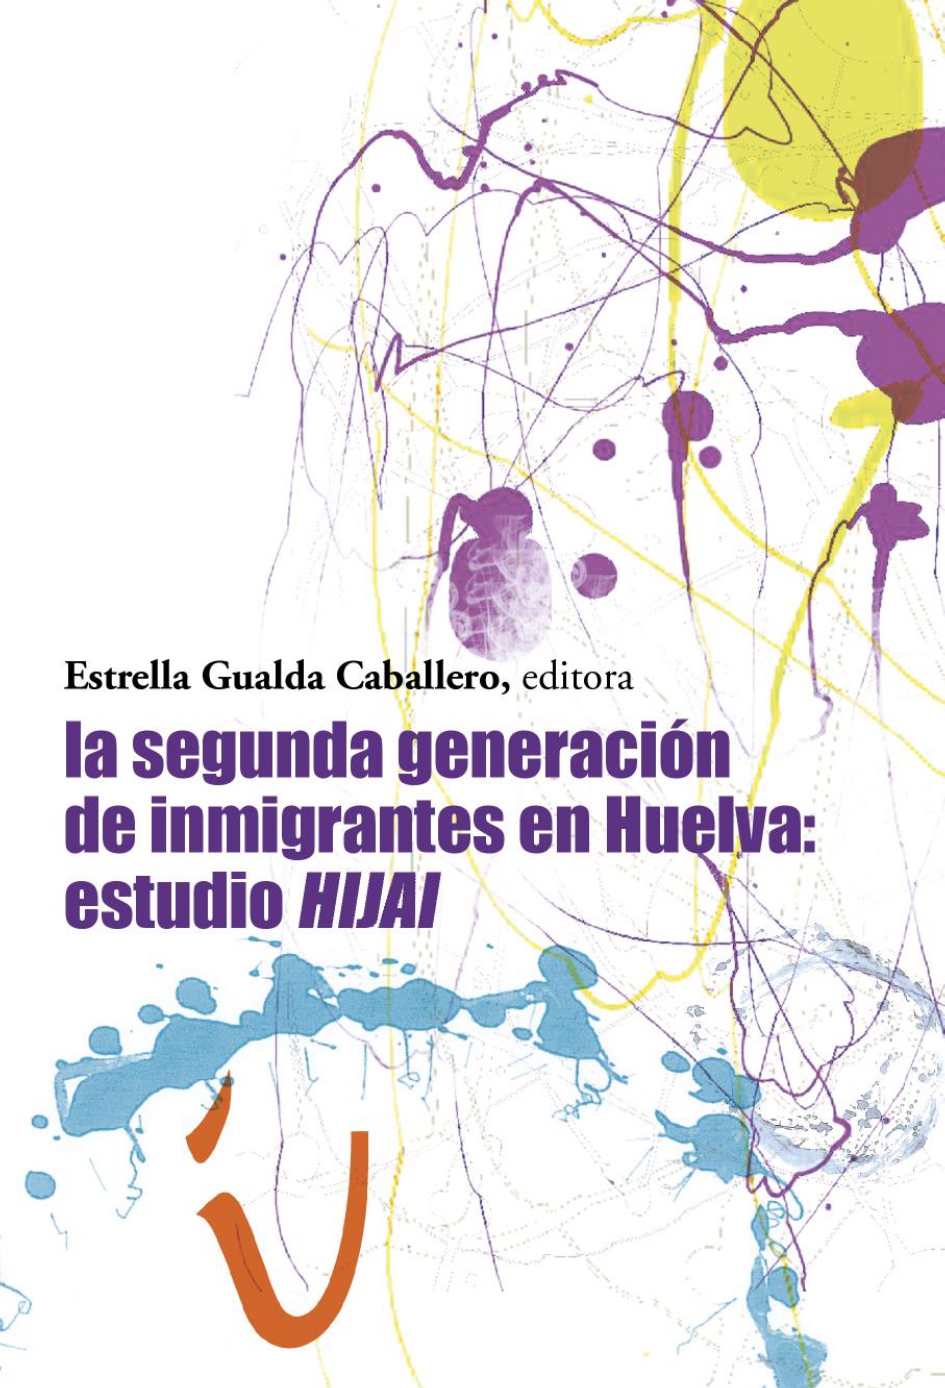 Imagen de portada del libro La segunda generación de inmigrantes en Huelva